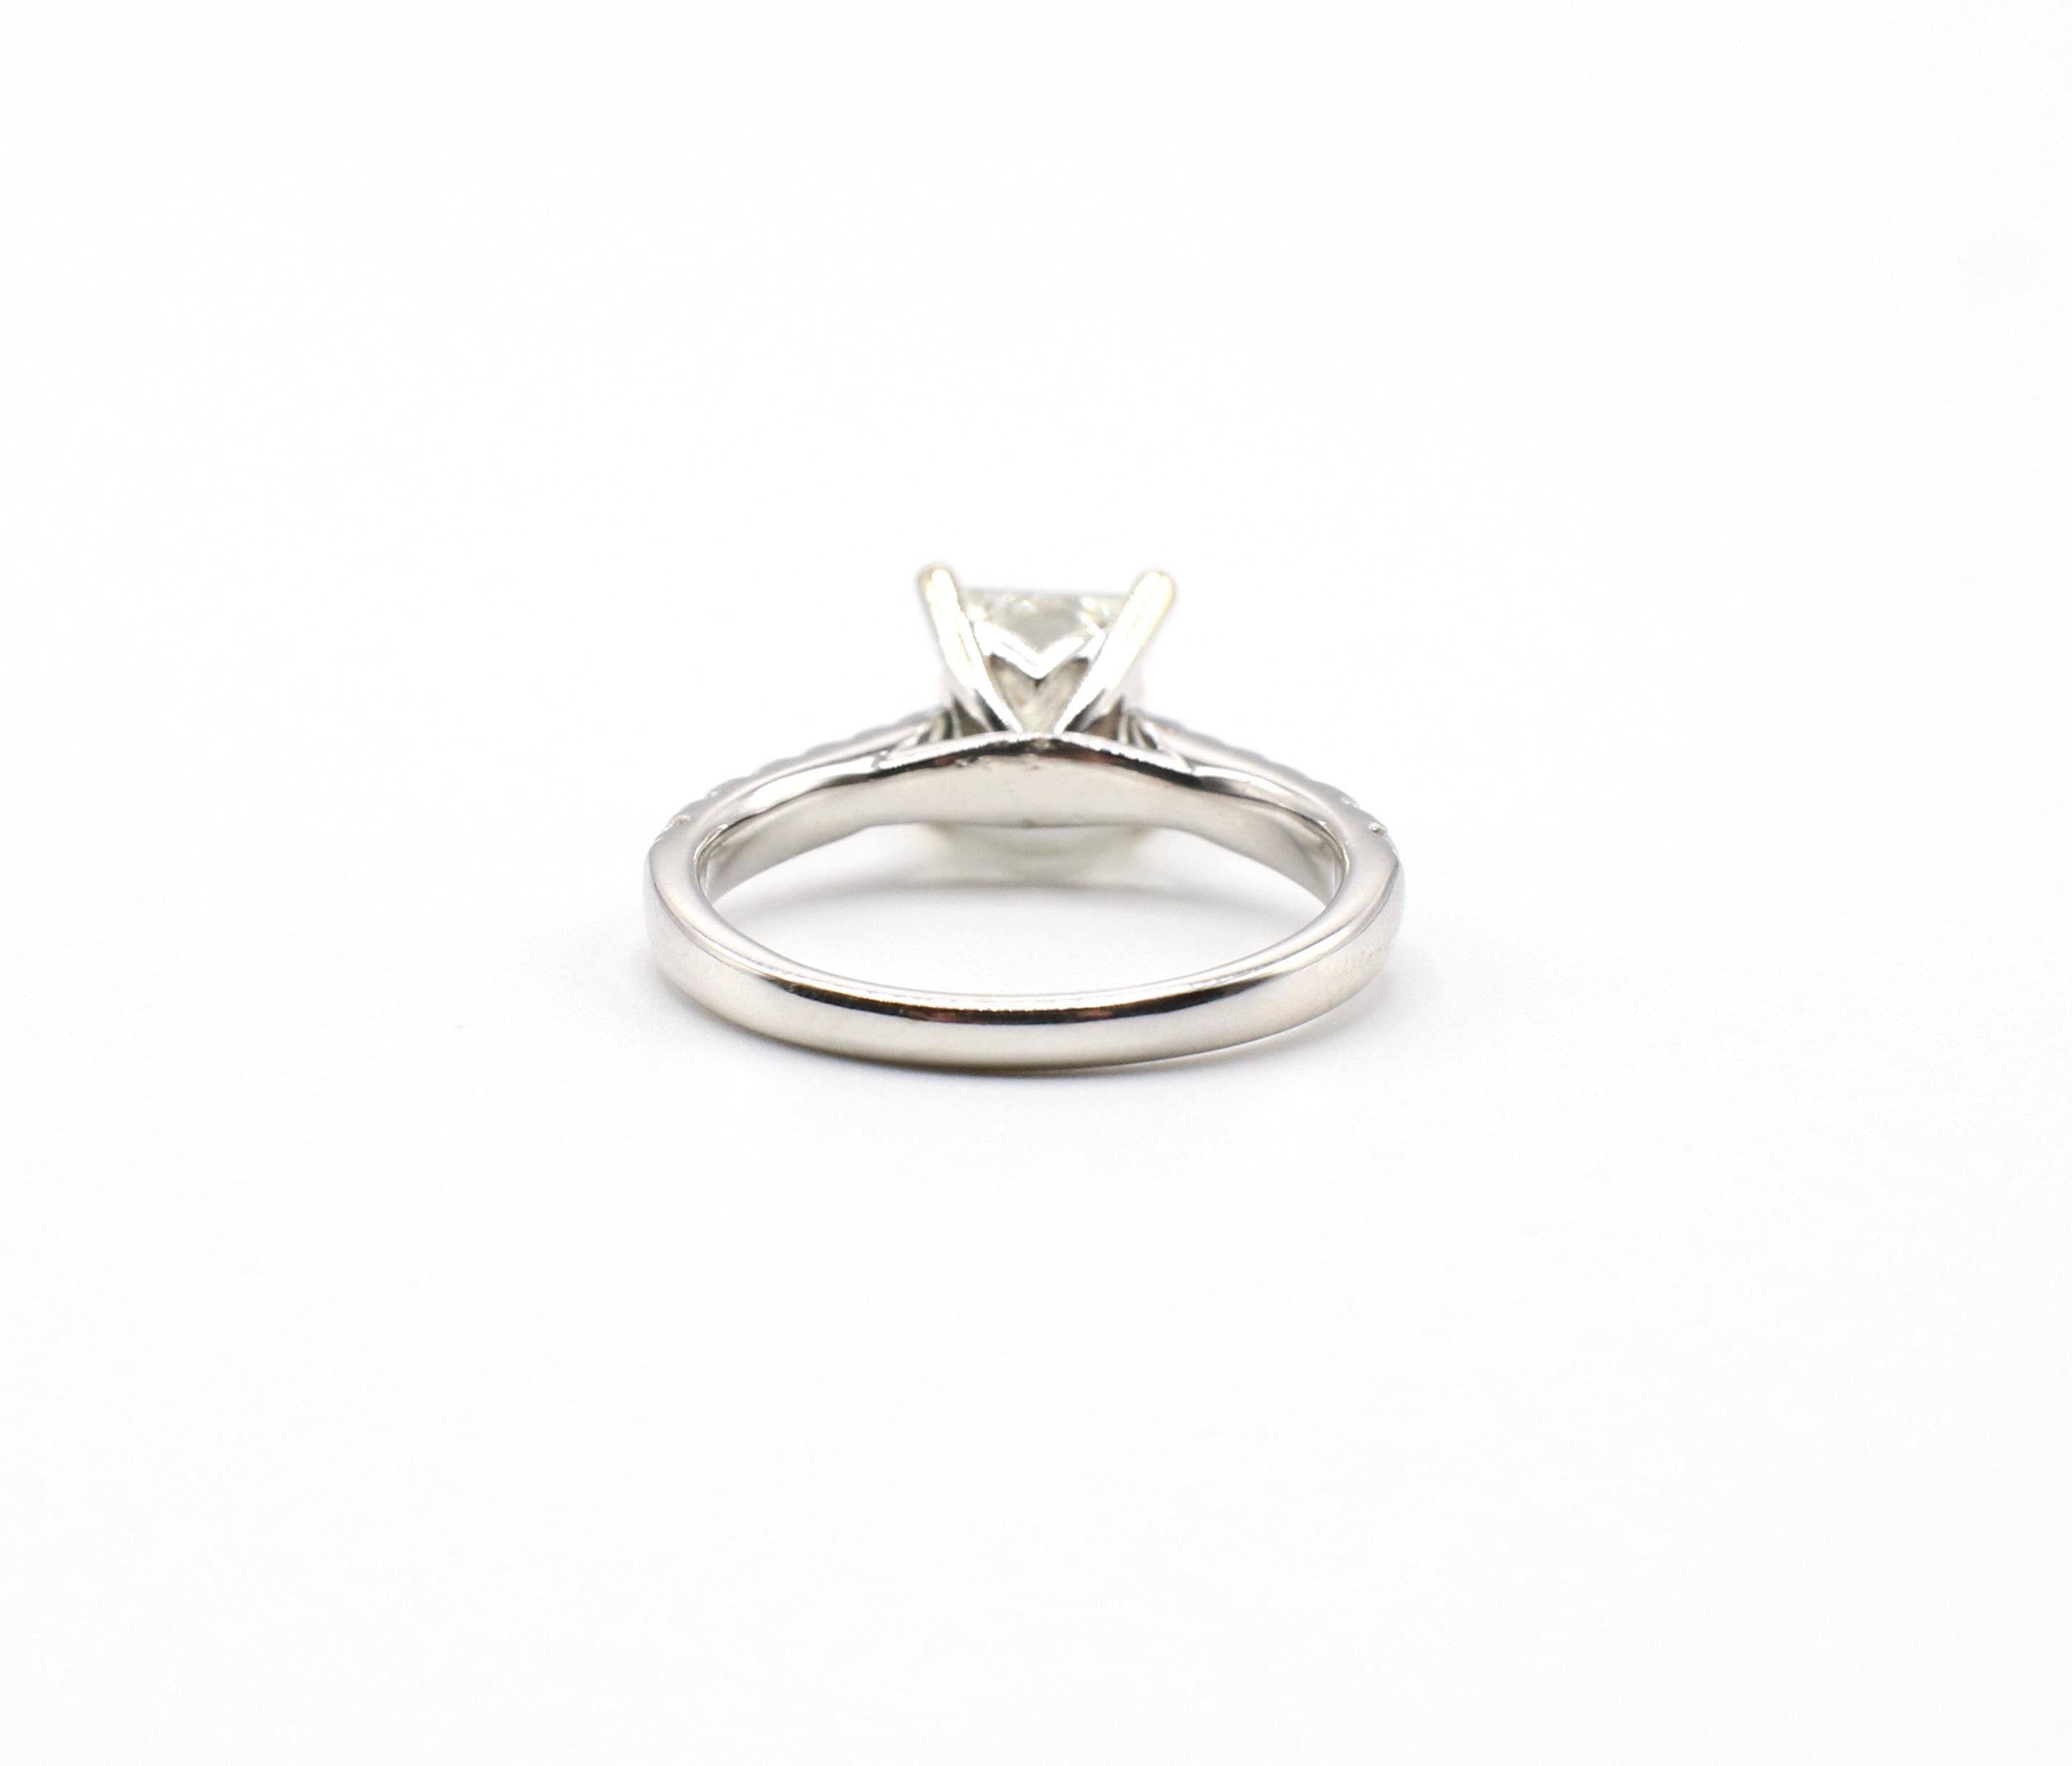 IGI Certified 1.48 Carat I VS1 Princess Cut 18 Karat White Gold Diamond Ring 2